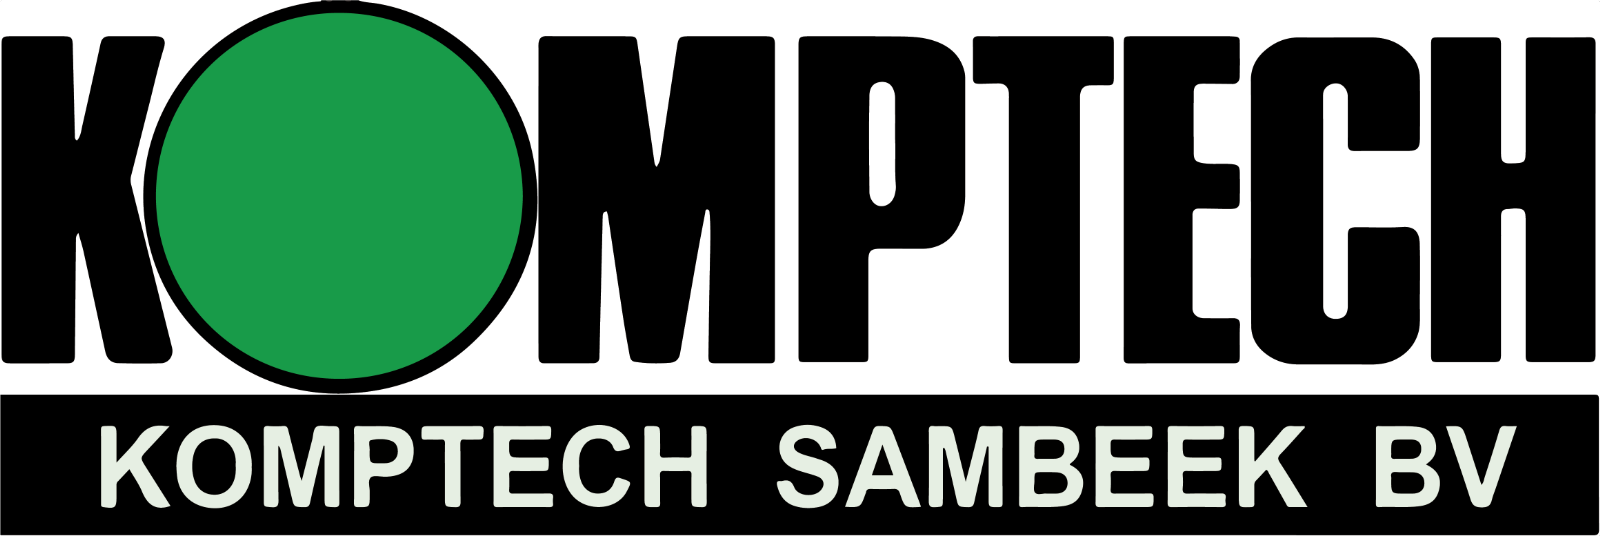 Komptech logo